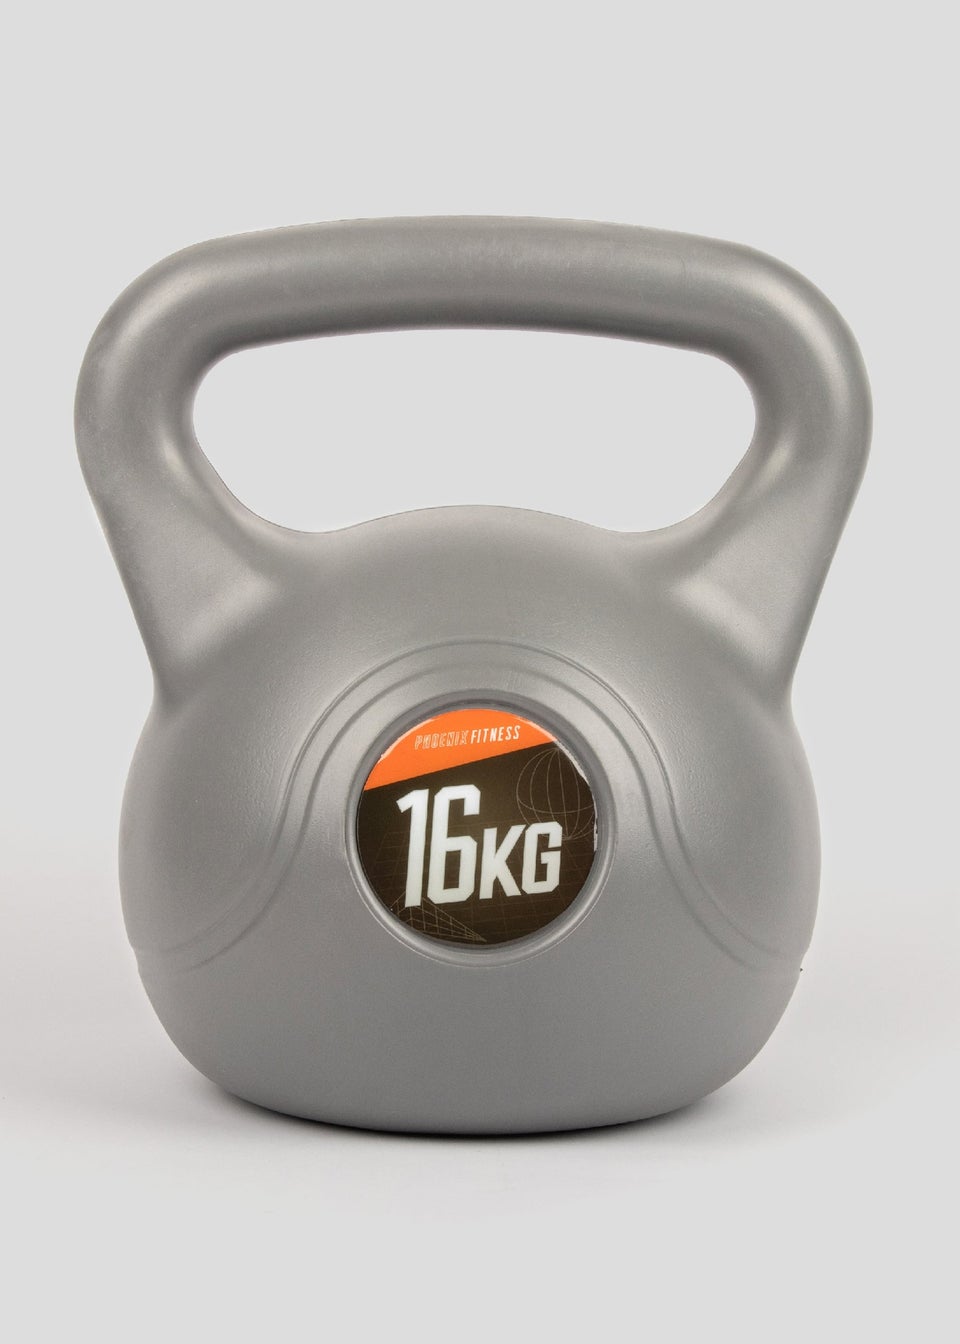 Phoenix Fitness Kettle Bell (16Kg)